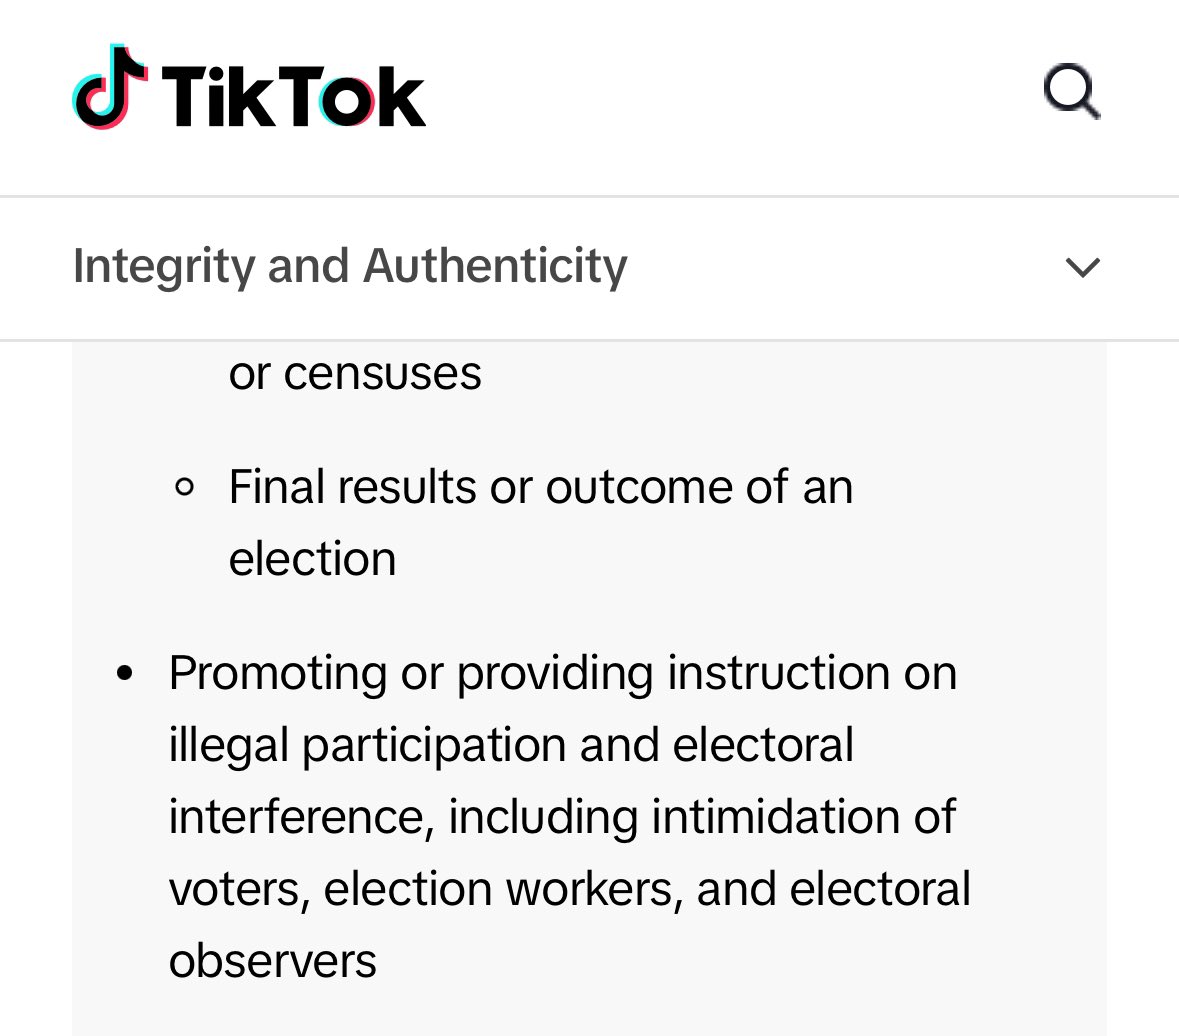 Hoy #TikTok publica sus nuevas “Community Guidelines” y se convierte en la primera empresa digital en prohibir la intimidación a votantes, funcionarios electorales Y OBSERVADORES ELECTORALES en su plataforma!!! Felicidades y gracias @paulalekanda!! tiktok.com/community-guid…